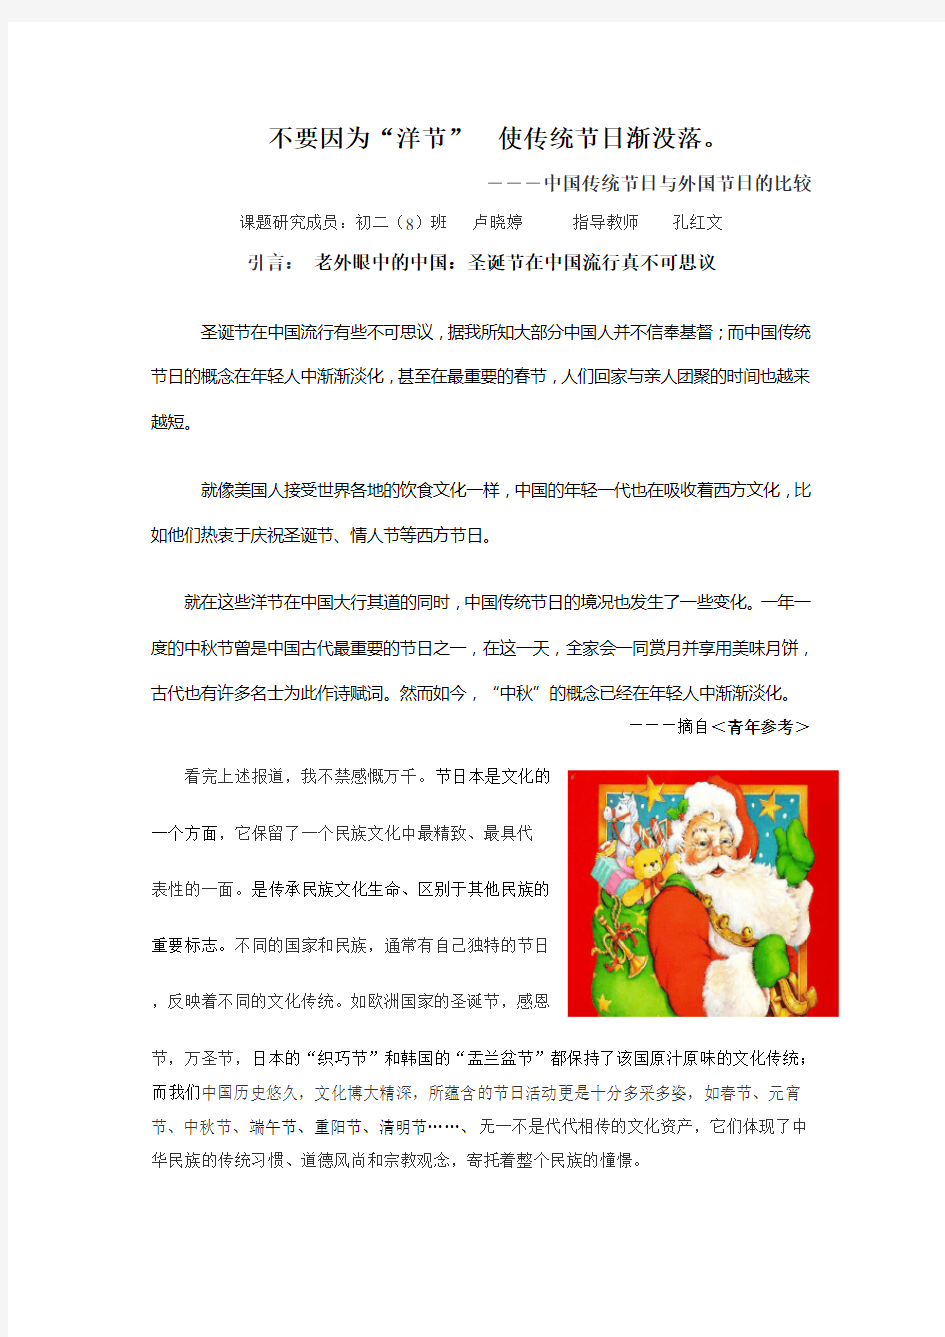 中国传统节日与外国节日的比较(已修)